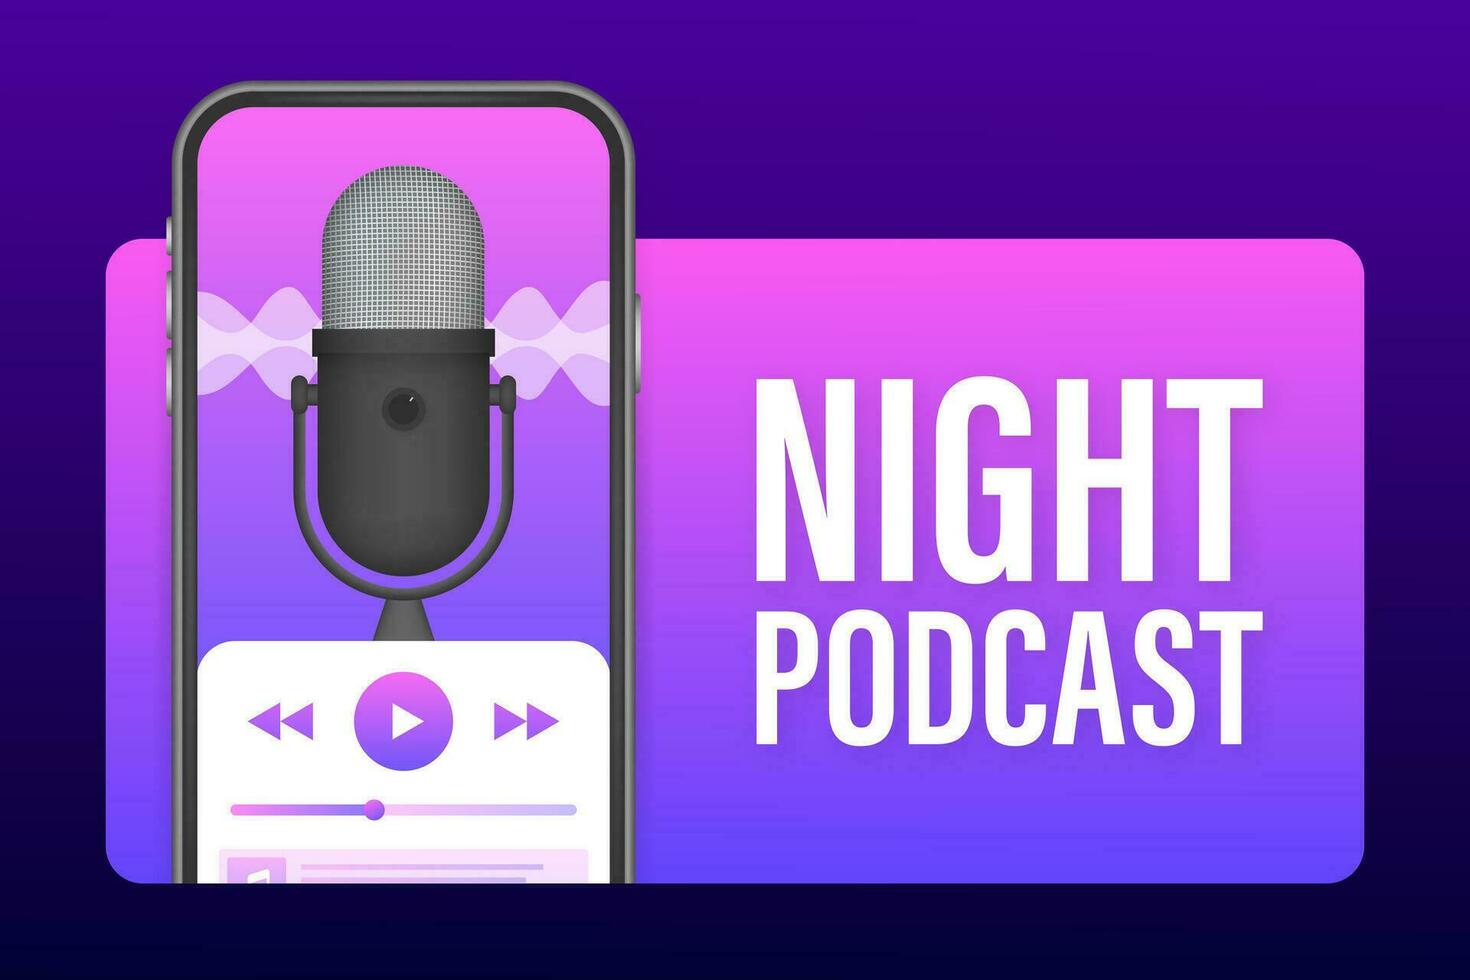 Nacht Podcast auf smatrphone Bildschirm, Vektor Symbol im eben isometrisch Stil isoliert auf Farbe Hintergrund. Vektor Lager Illustration